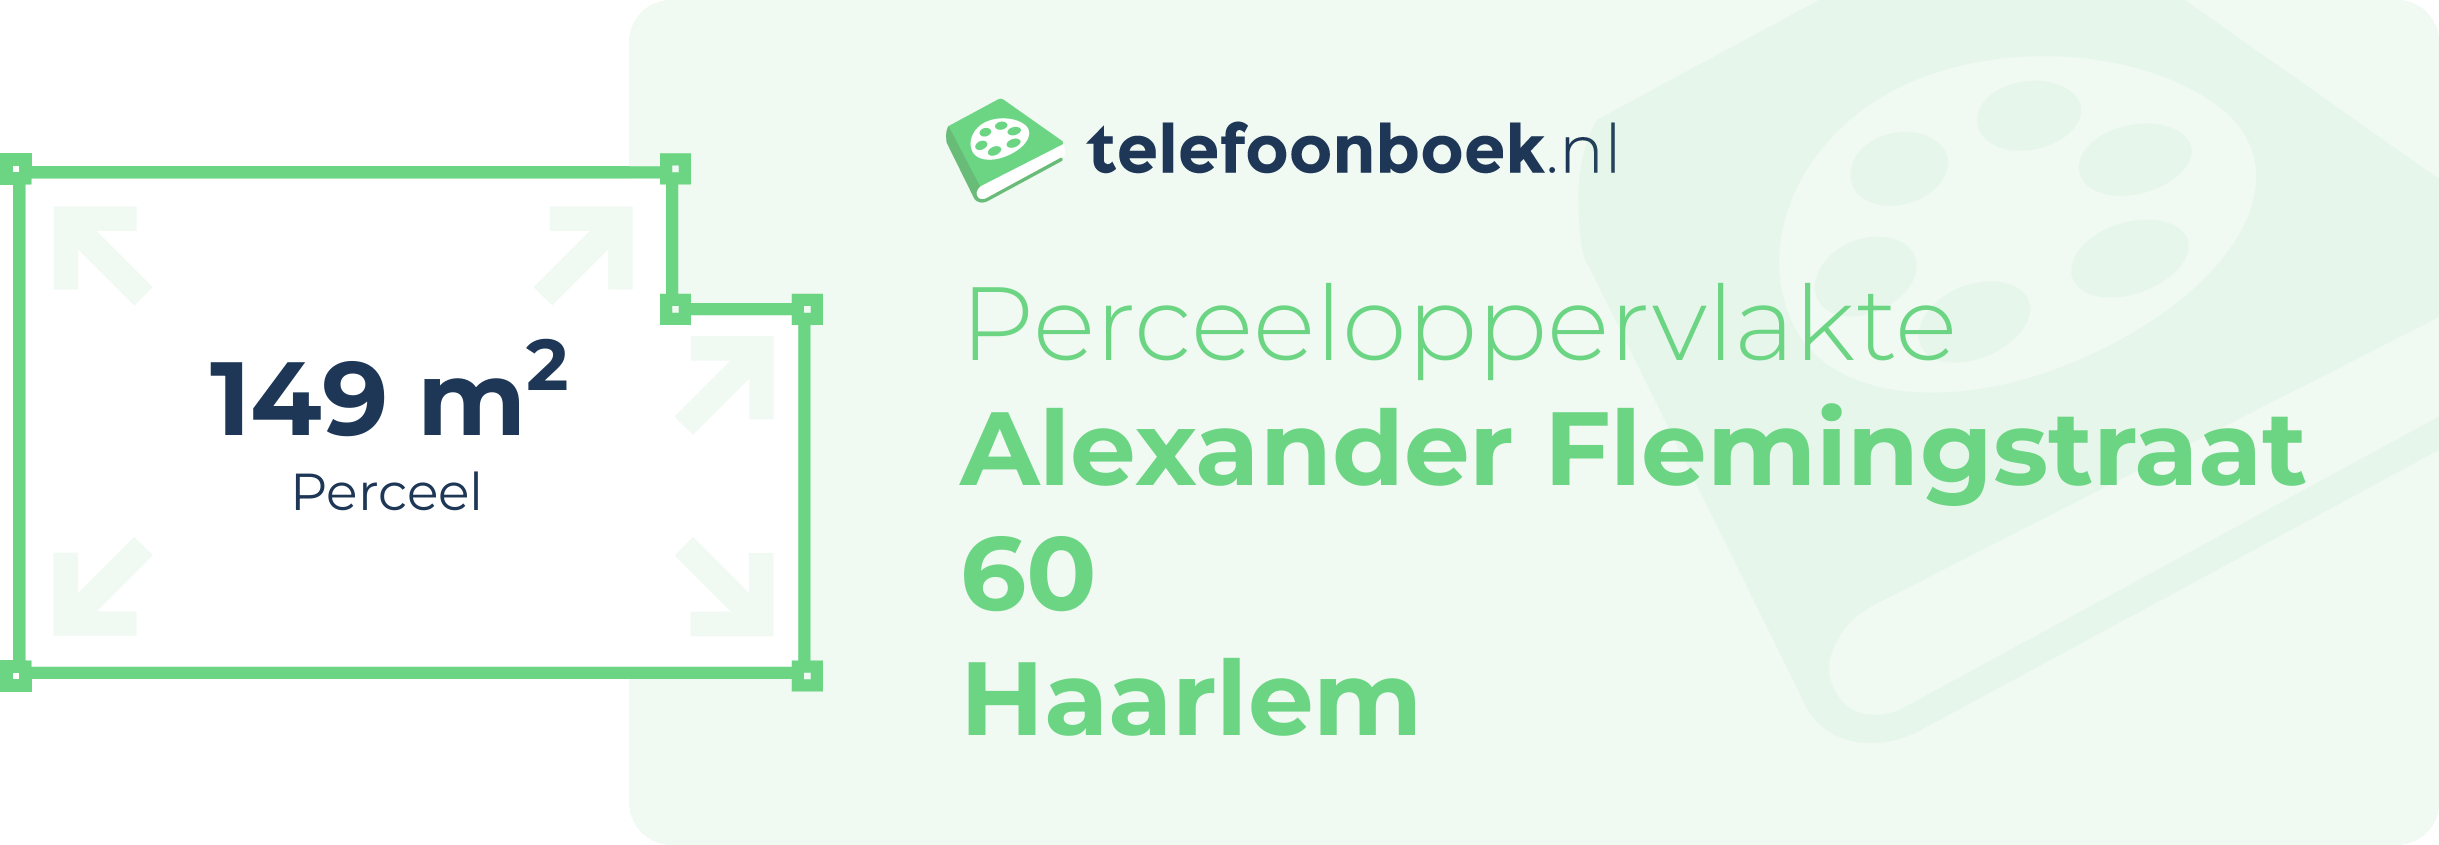 Perceeloppervlakte Alexander Flemingstraat 60 Haarlem